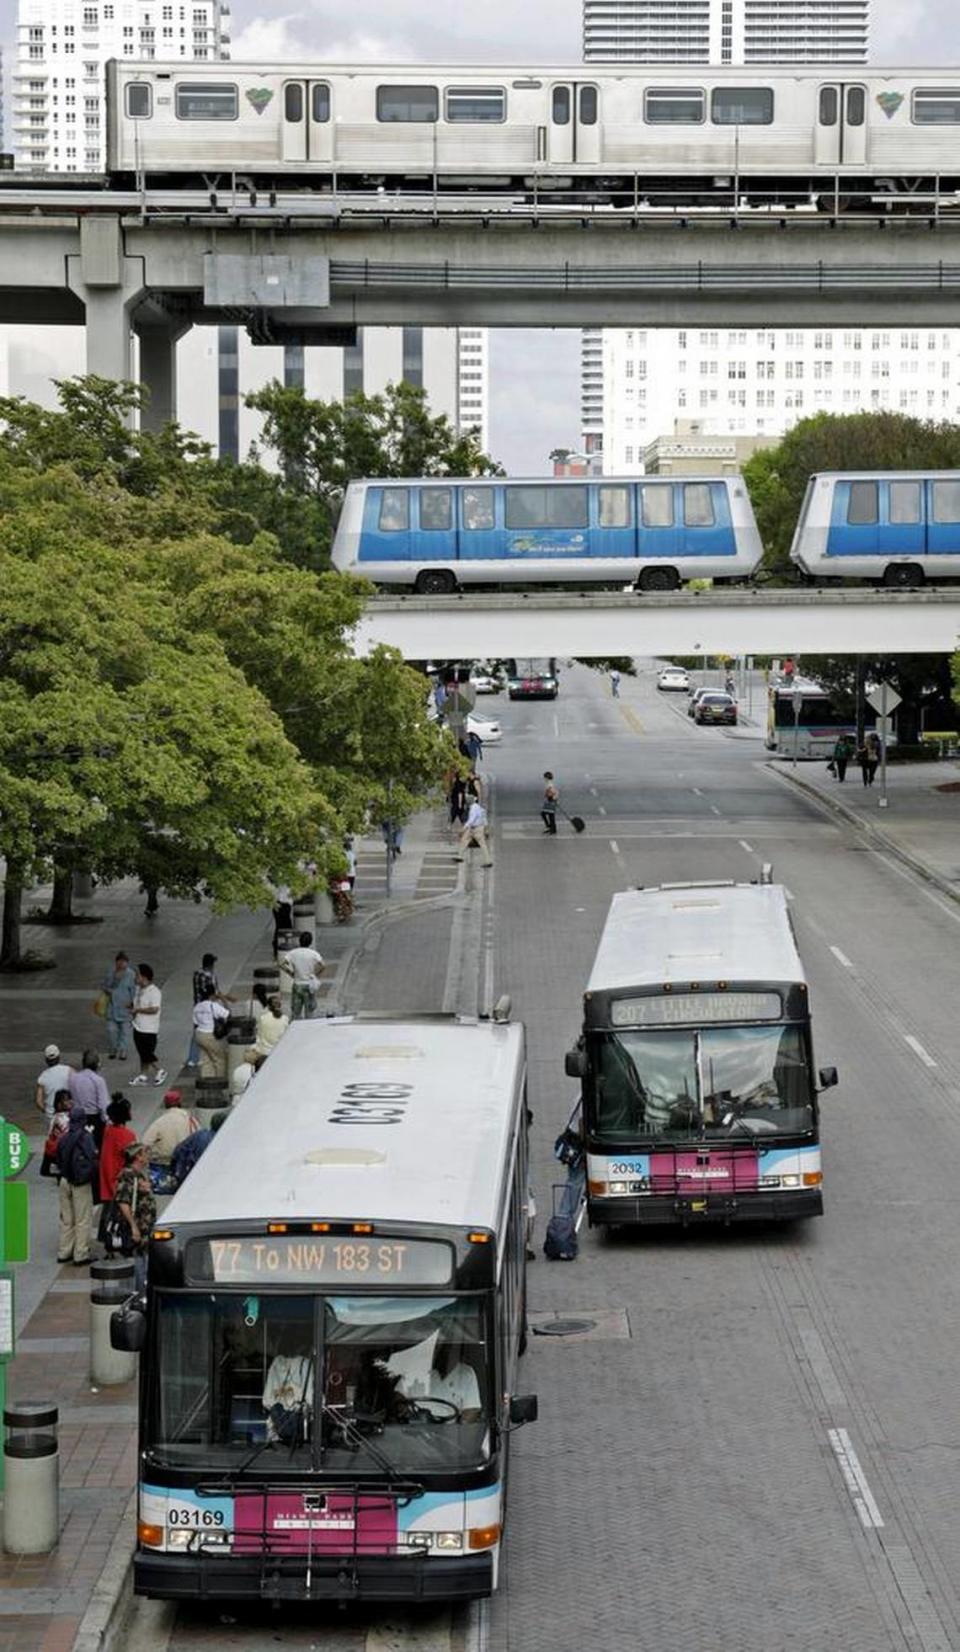 Foto de archivo que muestra las tres formas de transporte público que operan en el Condado Miami-Dade de arriba a abajo: Metrorail, Metromover y Metrobús. JOHN VANBEEKUM/Miami Herald File